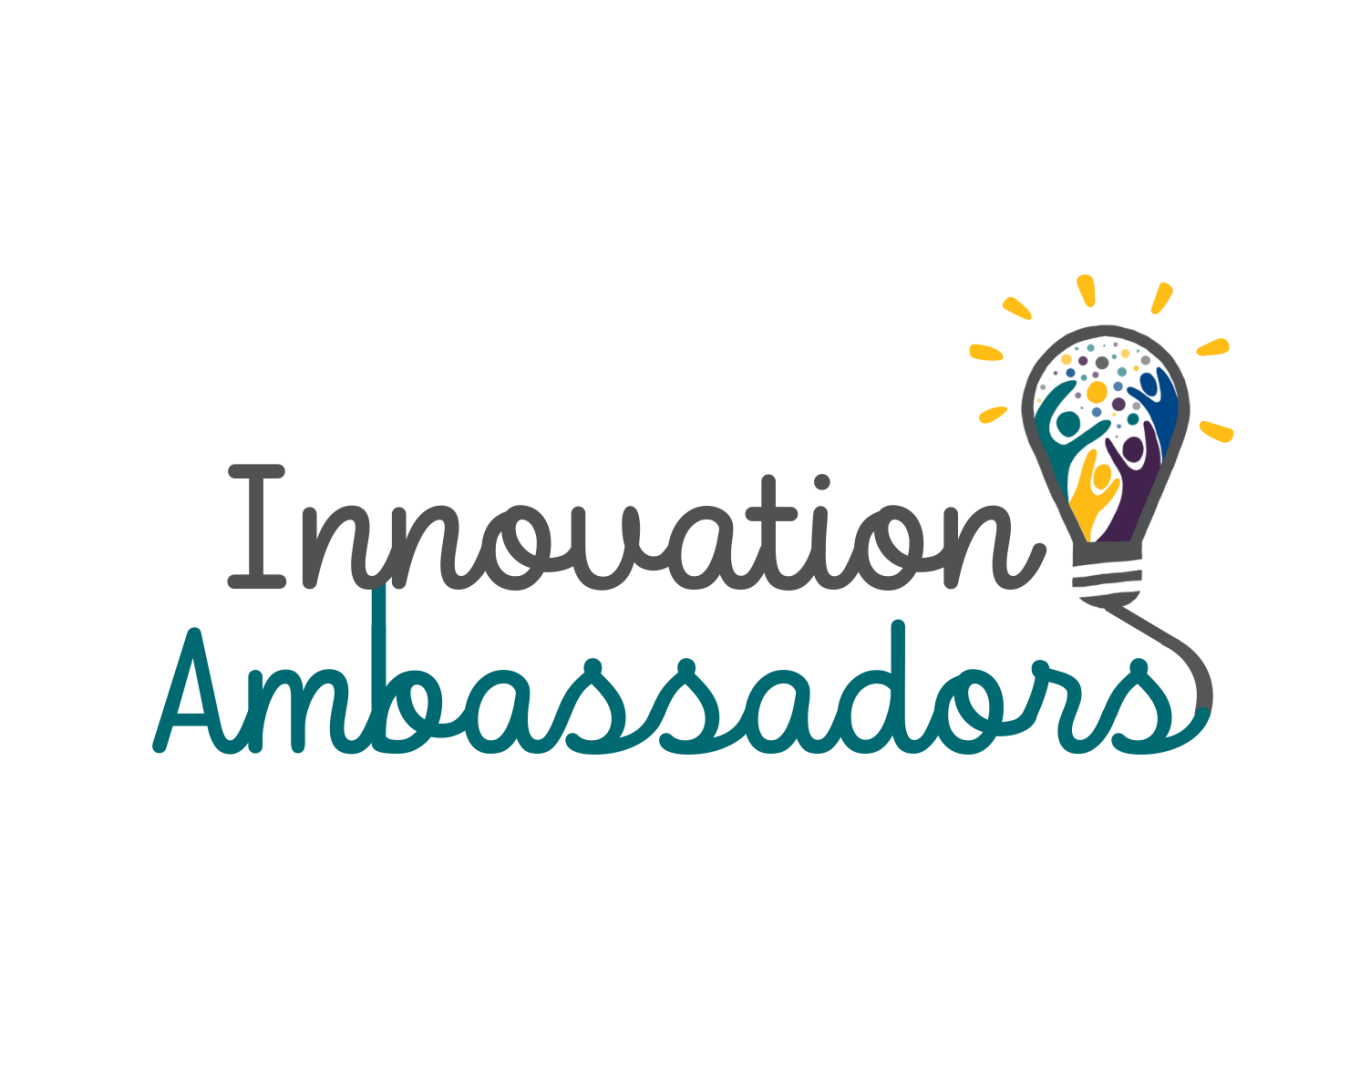 Innovation Ambassadors Logo